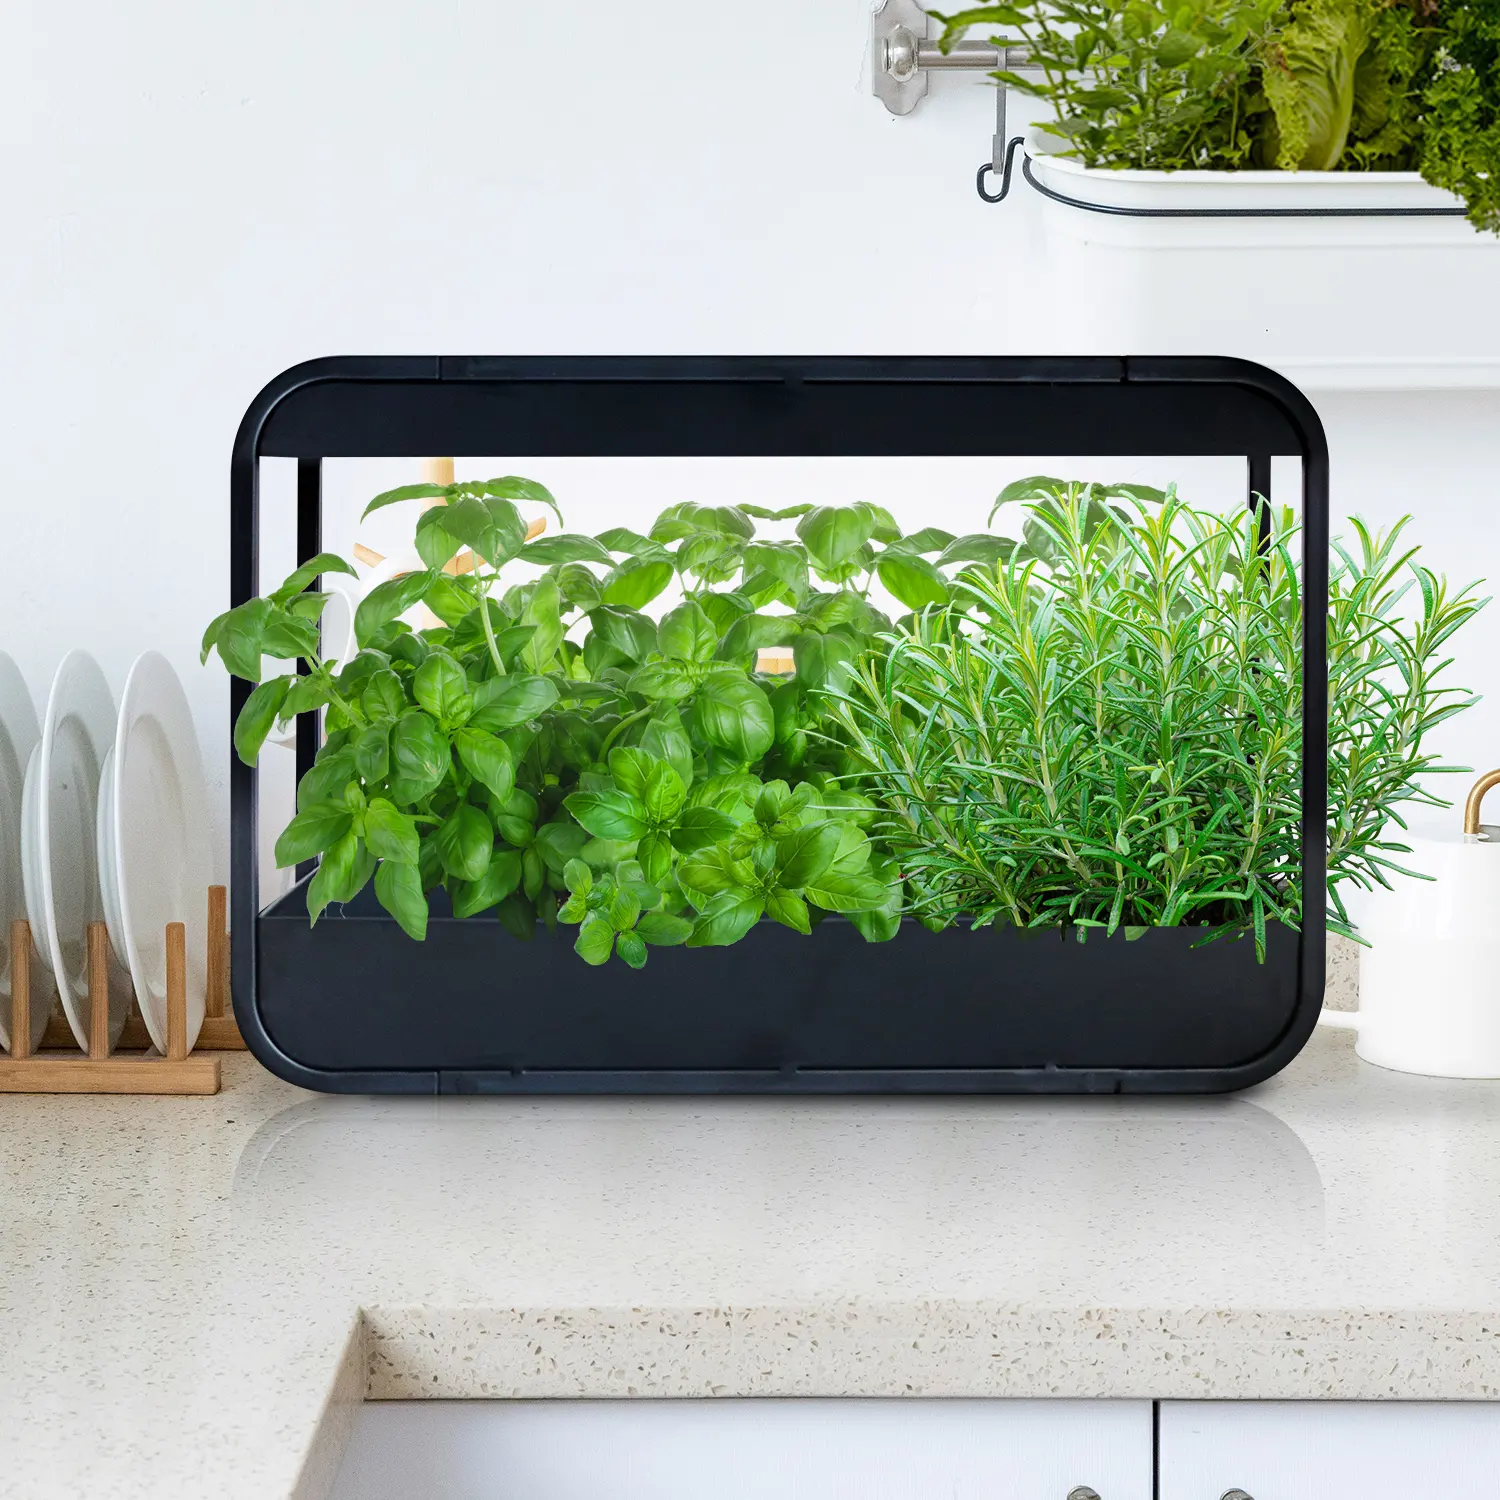 LED Metal indoor garden kitchen indoor garden with plant grow light wall herb garden growing kit